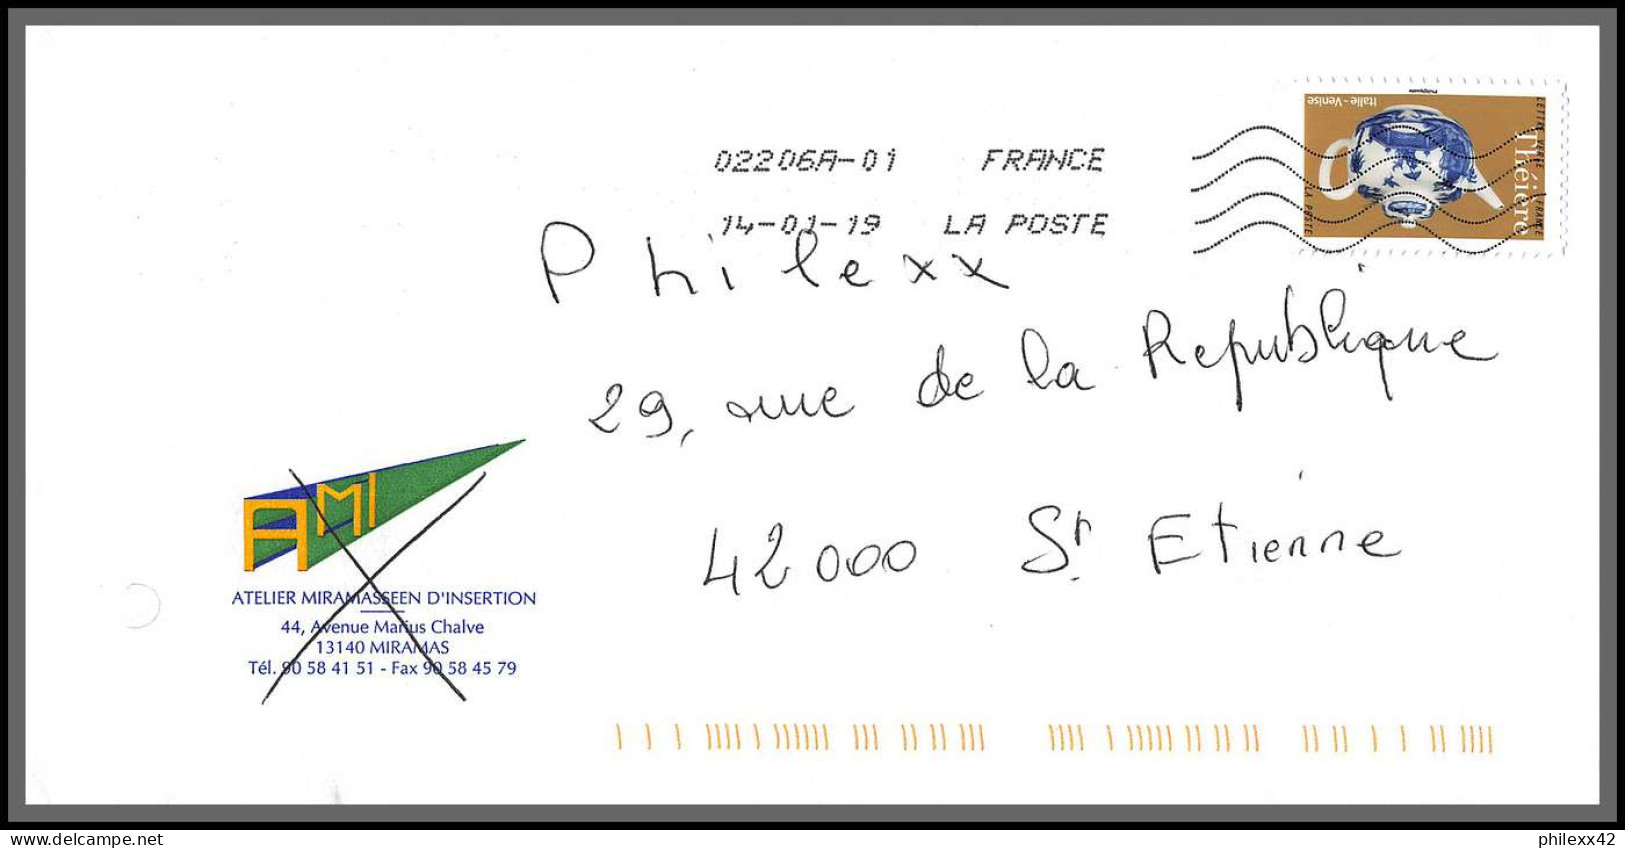 95725 - lot de 15 courriers lettres enveloppes de l'année 2019 divers affranchissements en EUROS